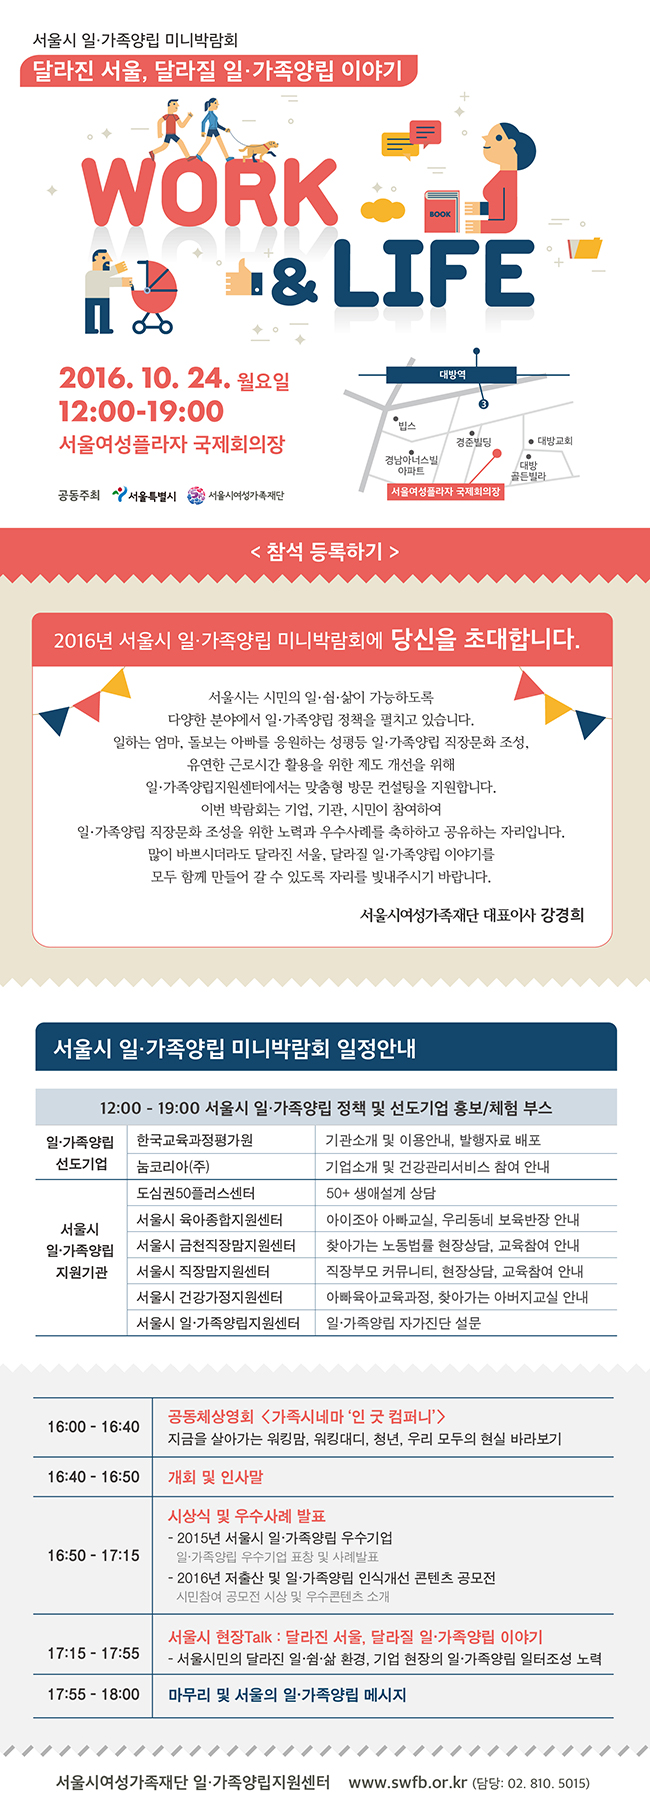 10월 24일 서울시 일·가족양립 미니박람회 참여합니다.